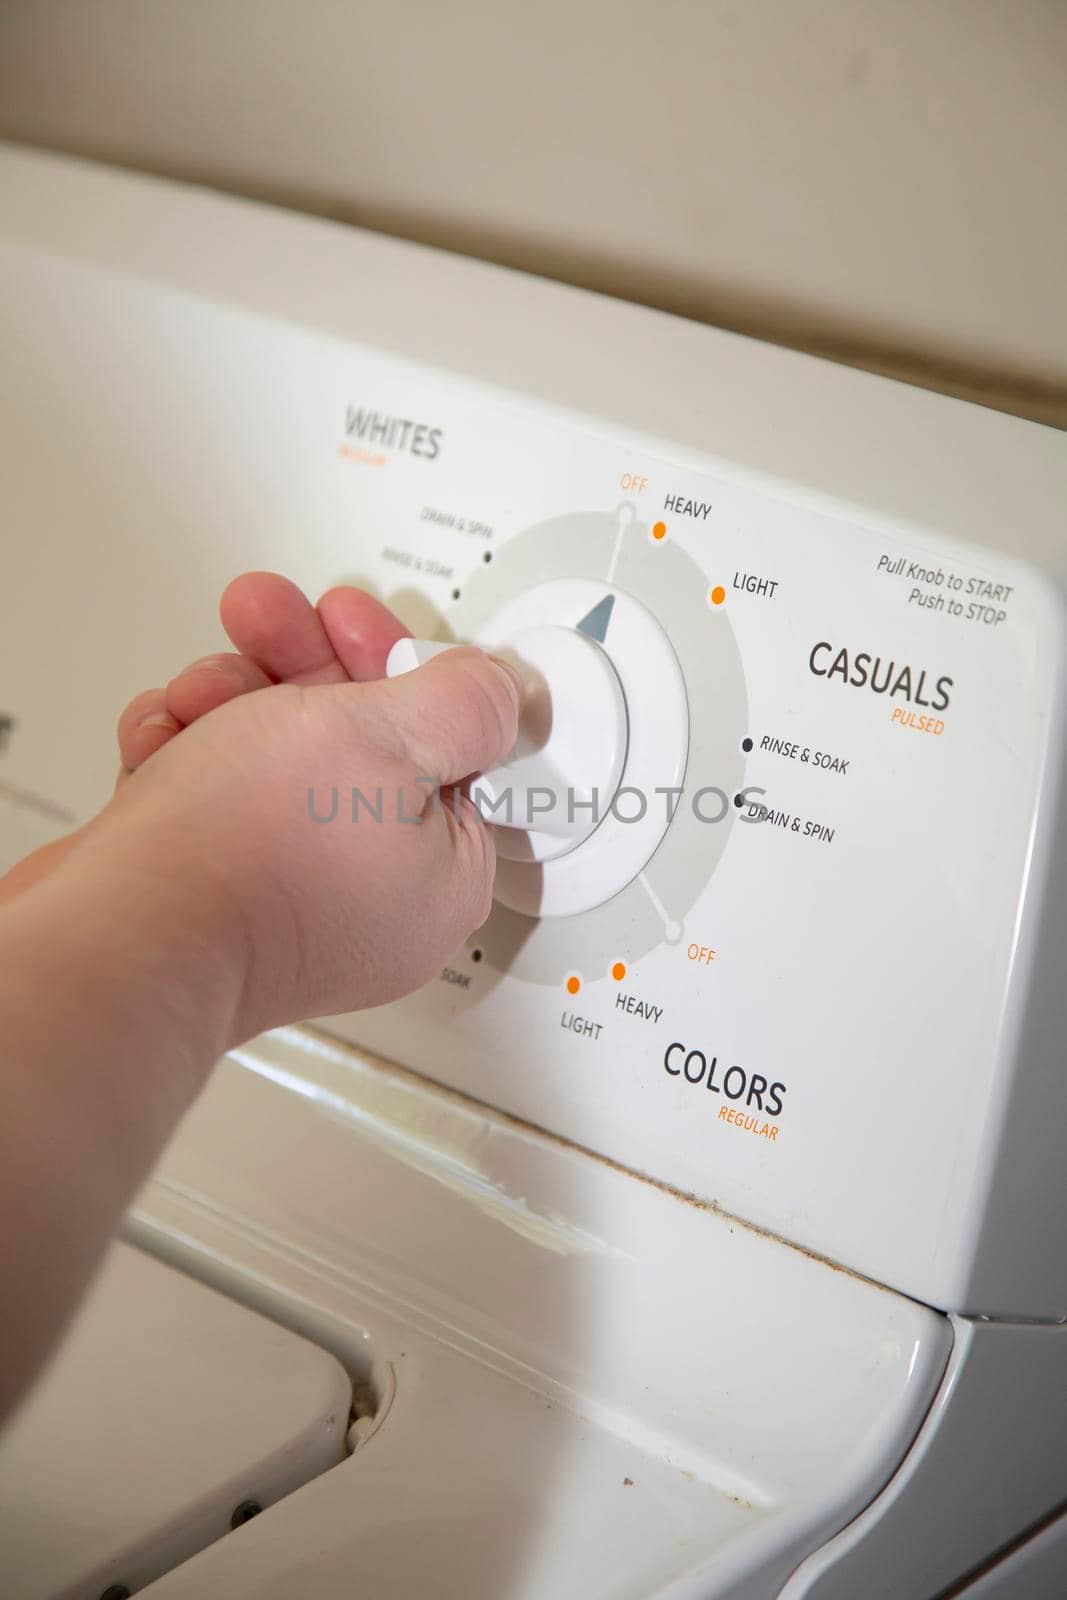 Woman turning a knob on a laundry washing machine